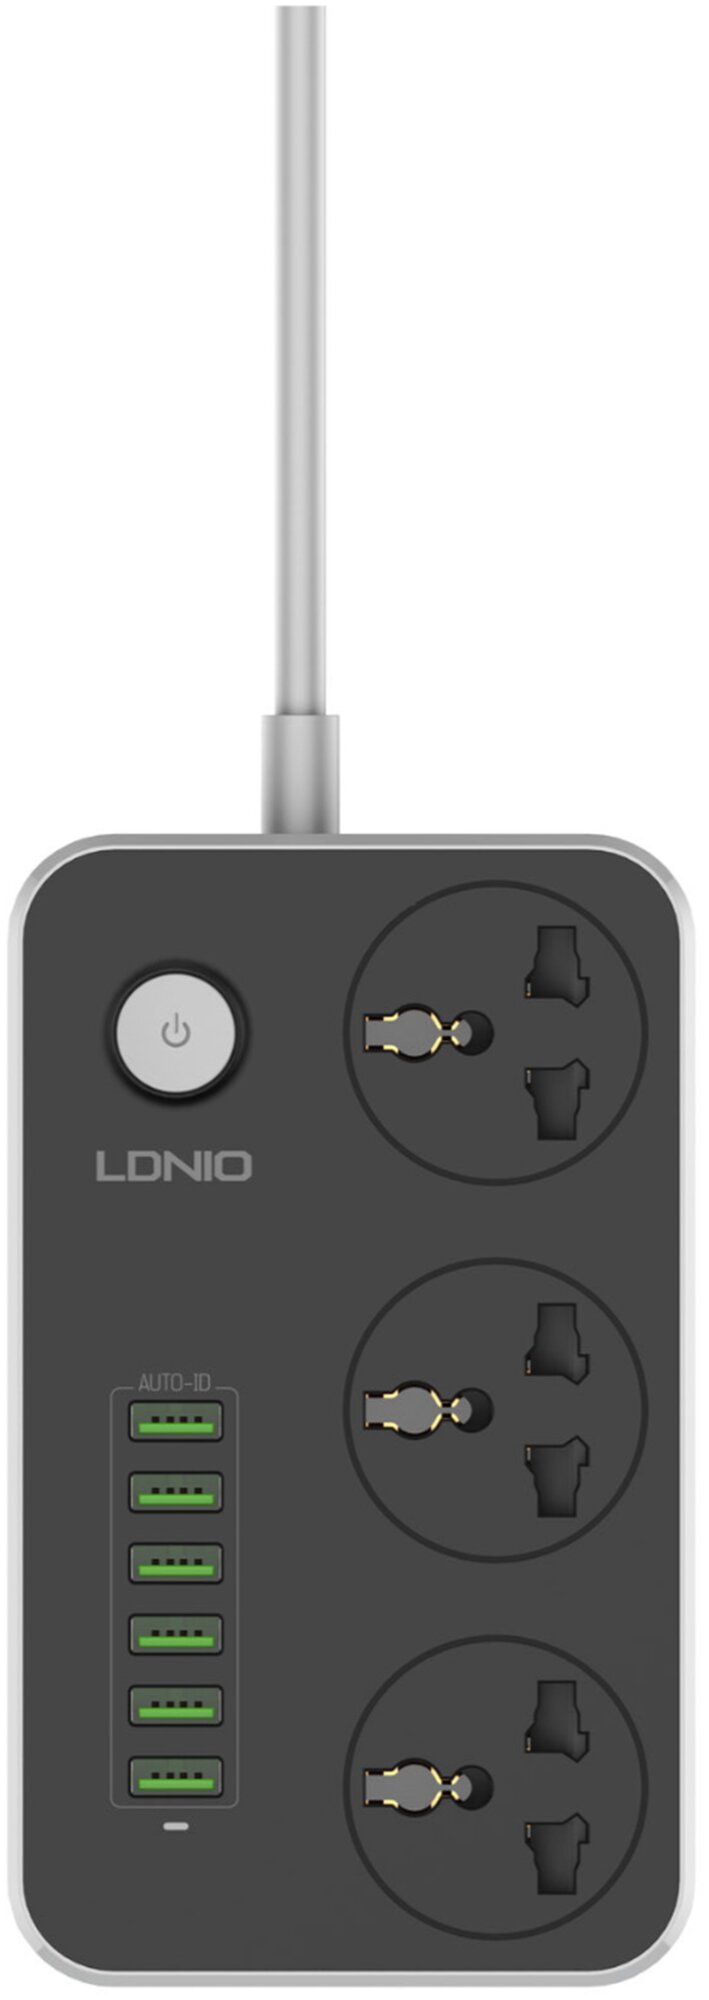 Сетевой фильтр LDNIO SC3604 - 3 универсальные розетки + USB зарядка 6 портов 3.4A, черно-серый - 2 метра